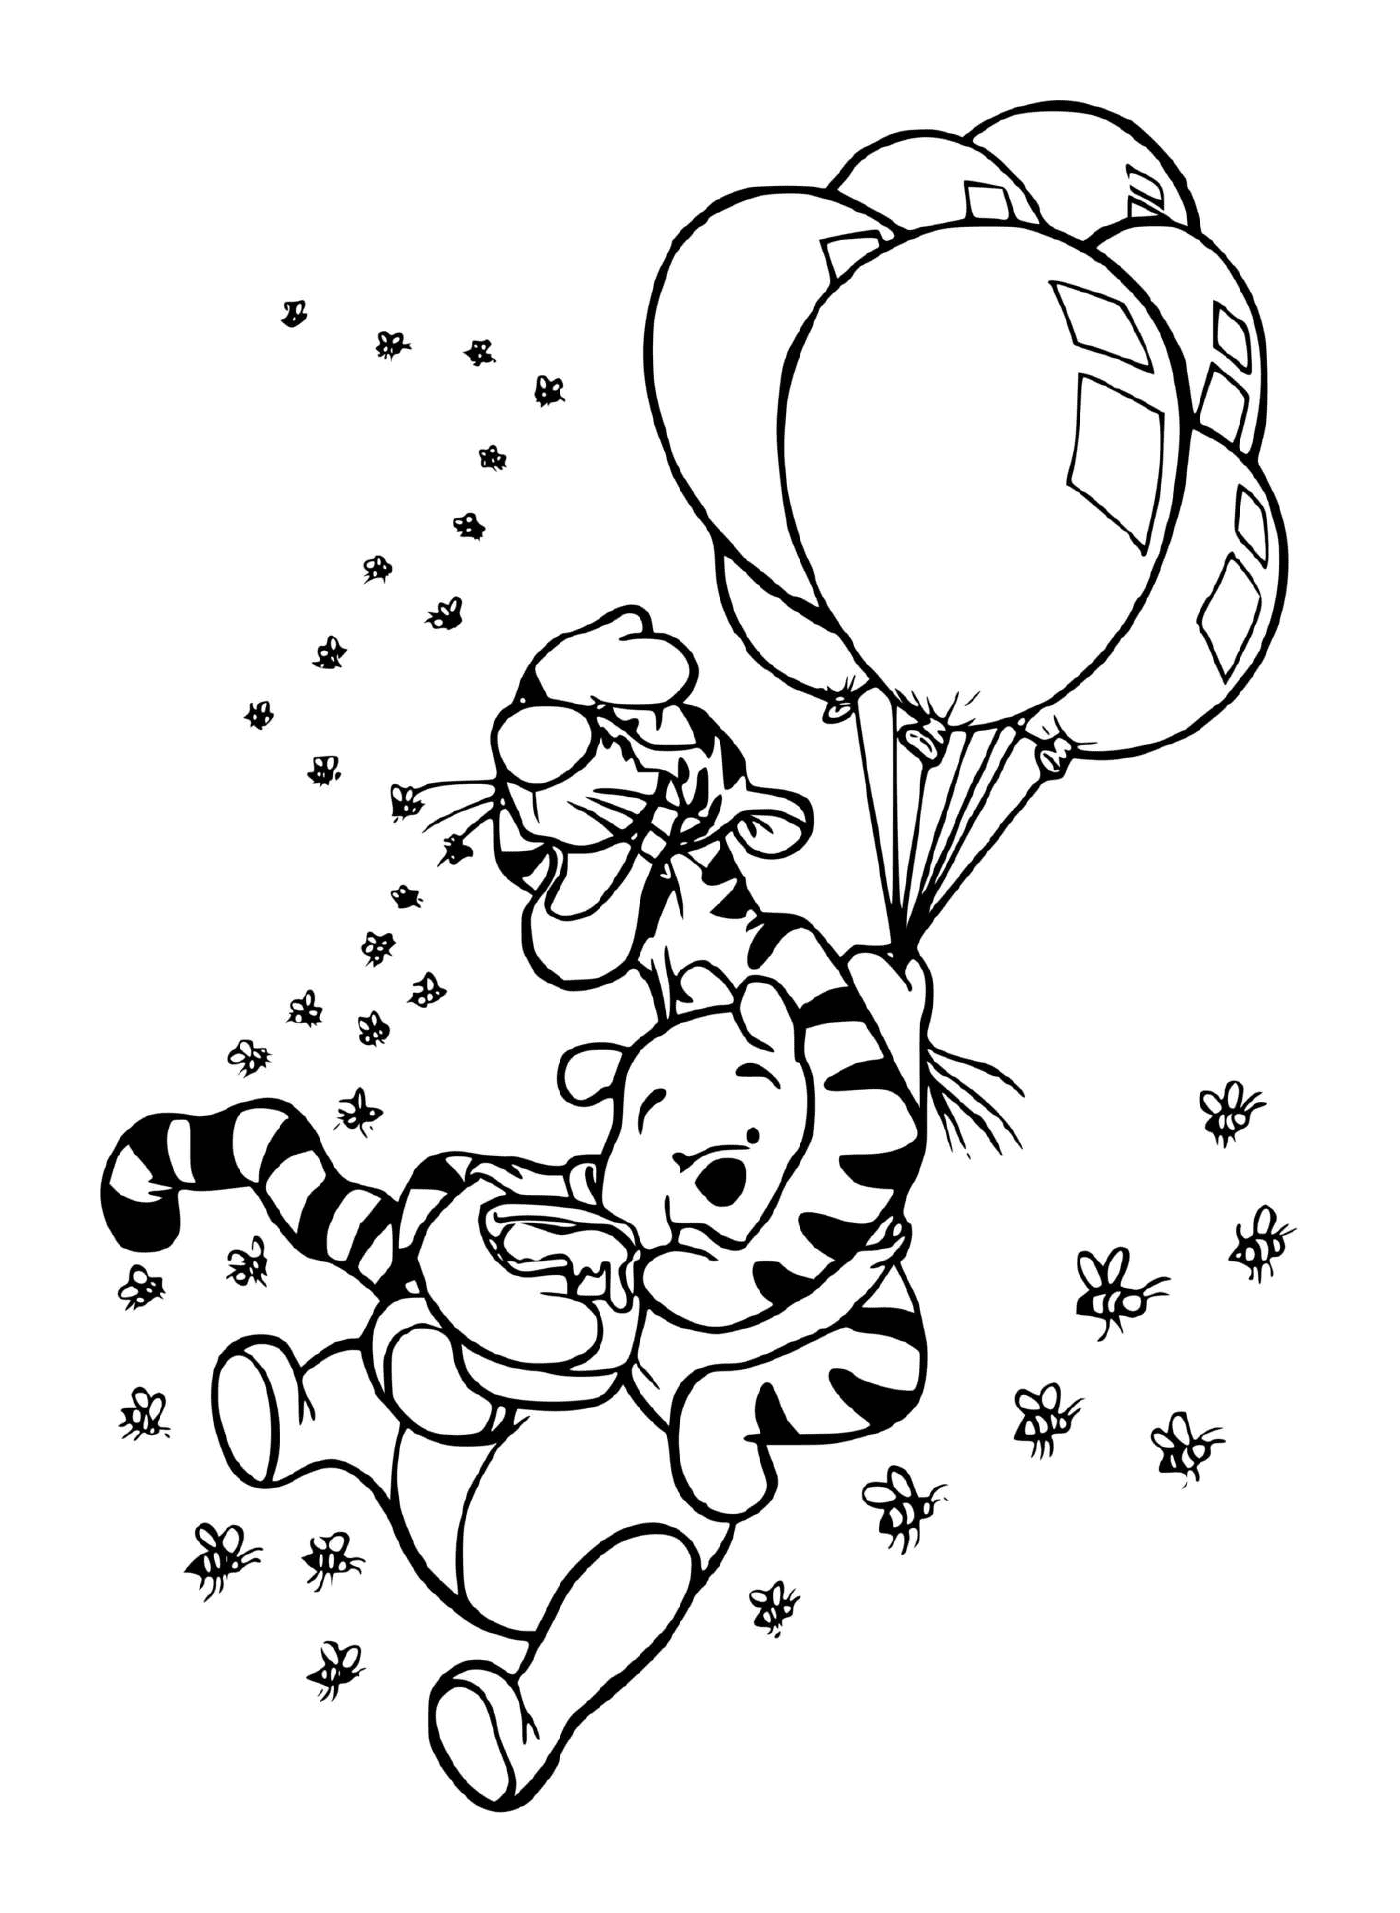  Tigrou e Winnie in aria con palloncini e una pentola di miele 